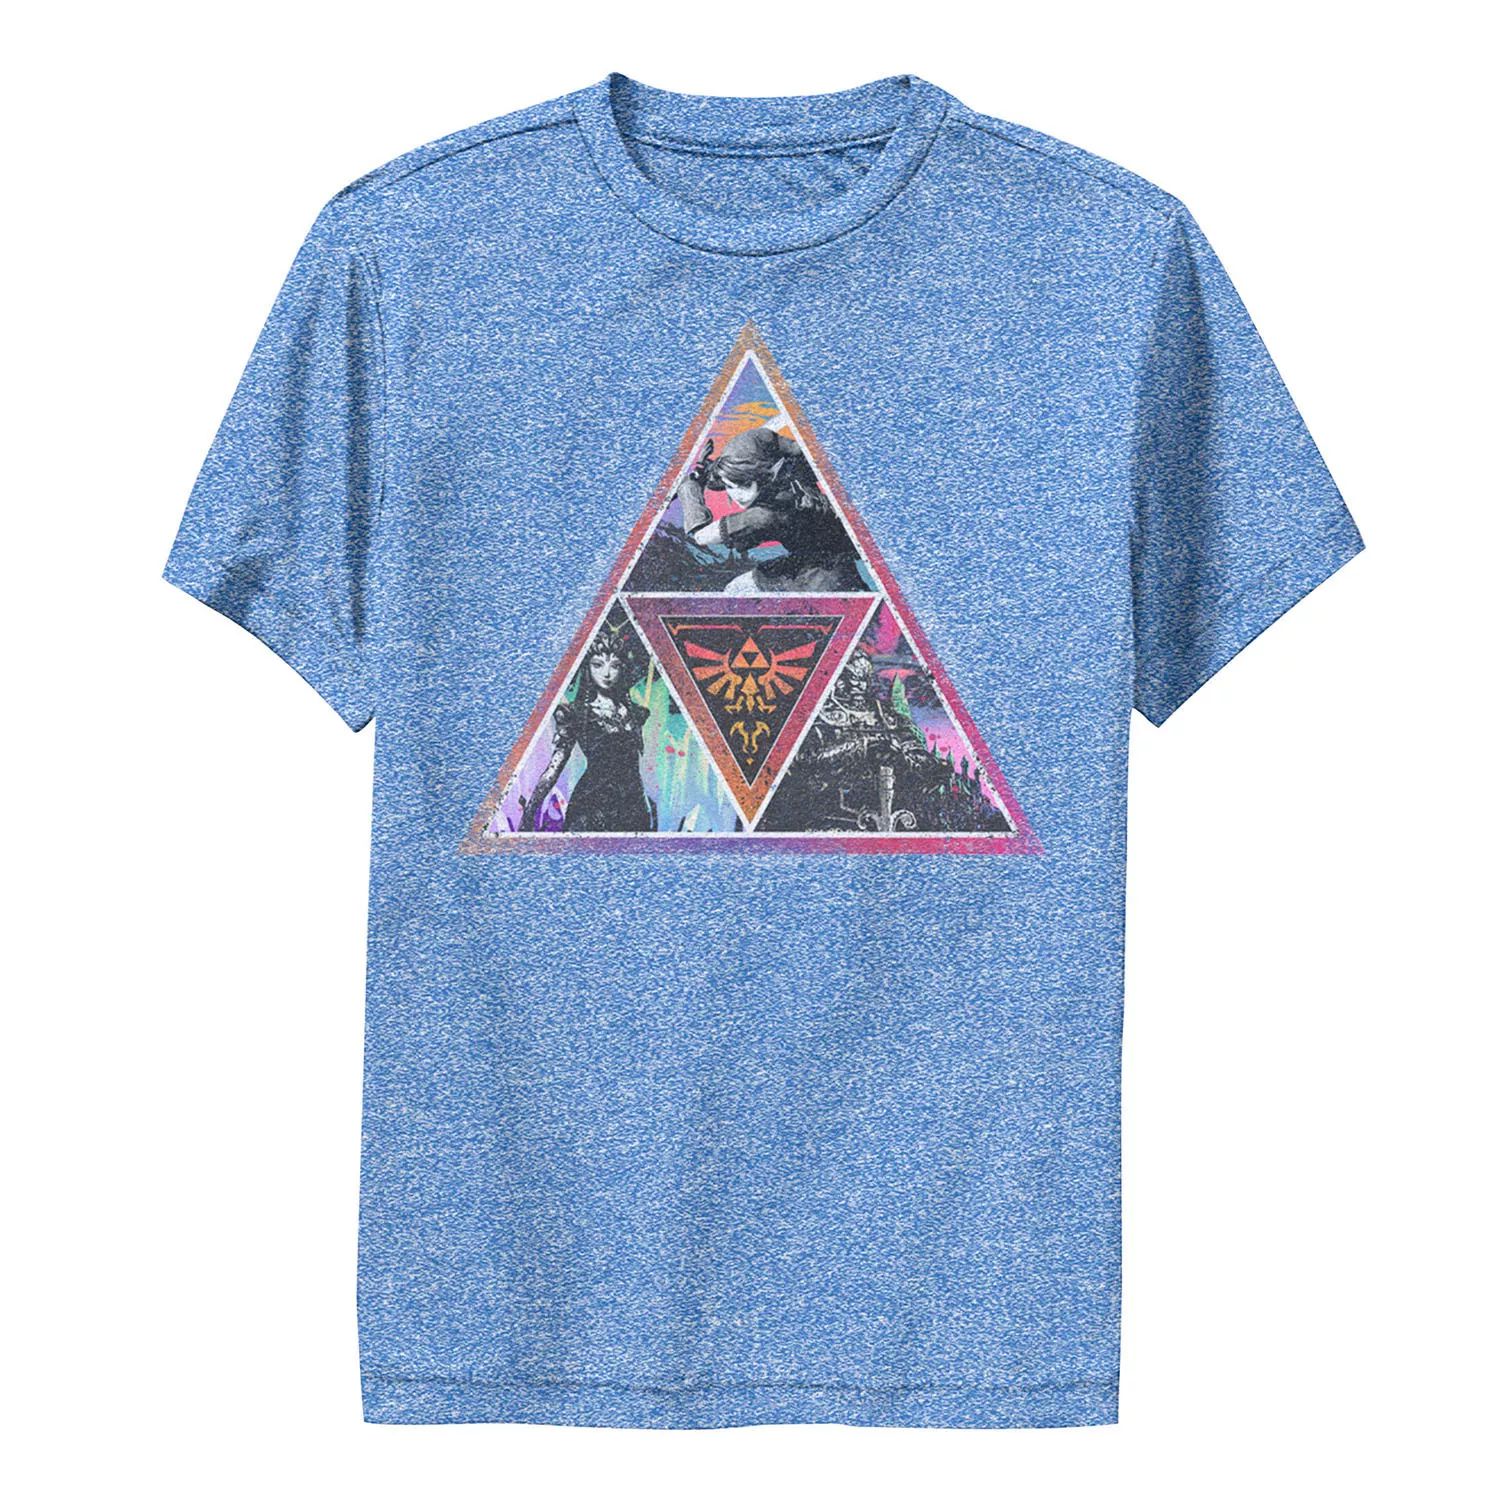 Летняя цветная футболка с рисунком Nintendo Legend of Zelda Triforce Triforce для мальчиков 8–20 лет Licensed Character летняя цветная футболка с рисунком nintendo legend of zelda triforce triforce для мальчиков 8–20 лет licensed character черный